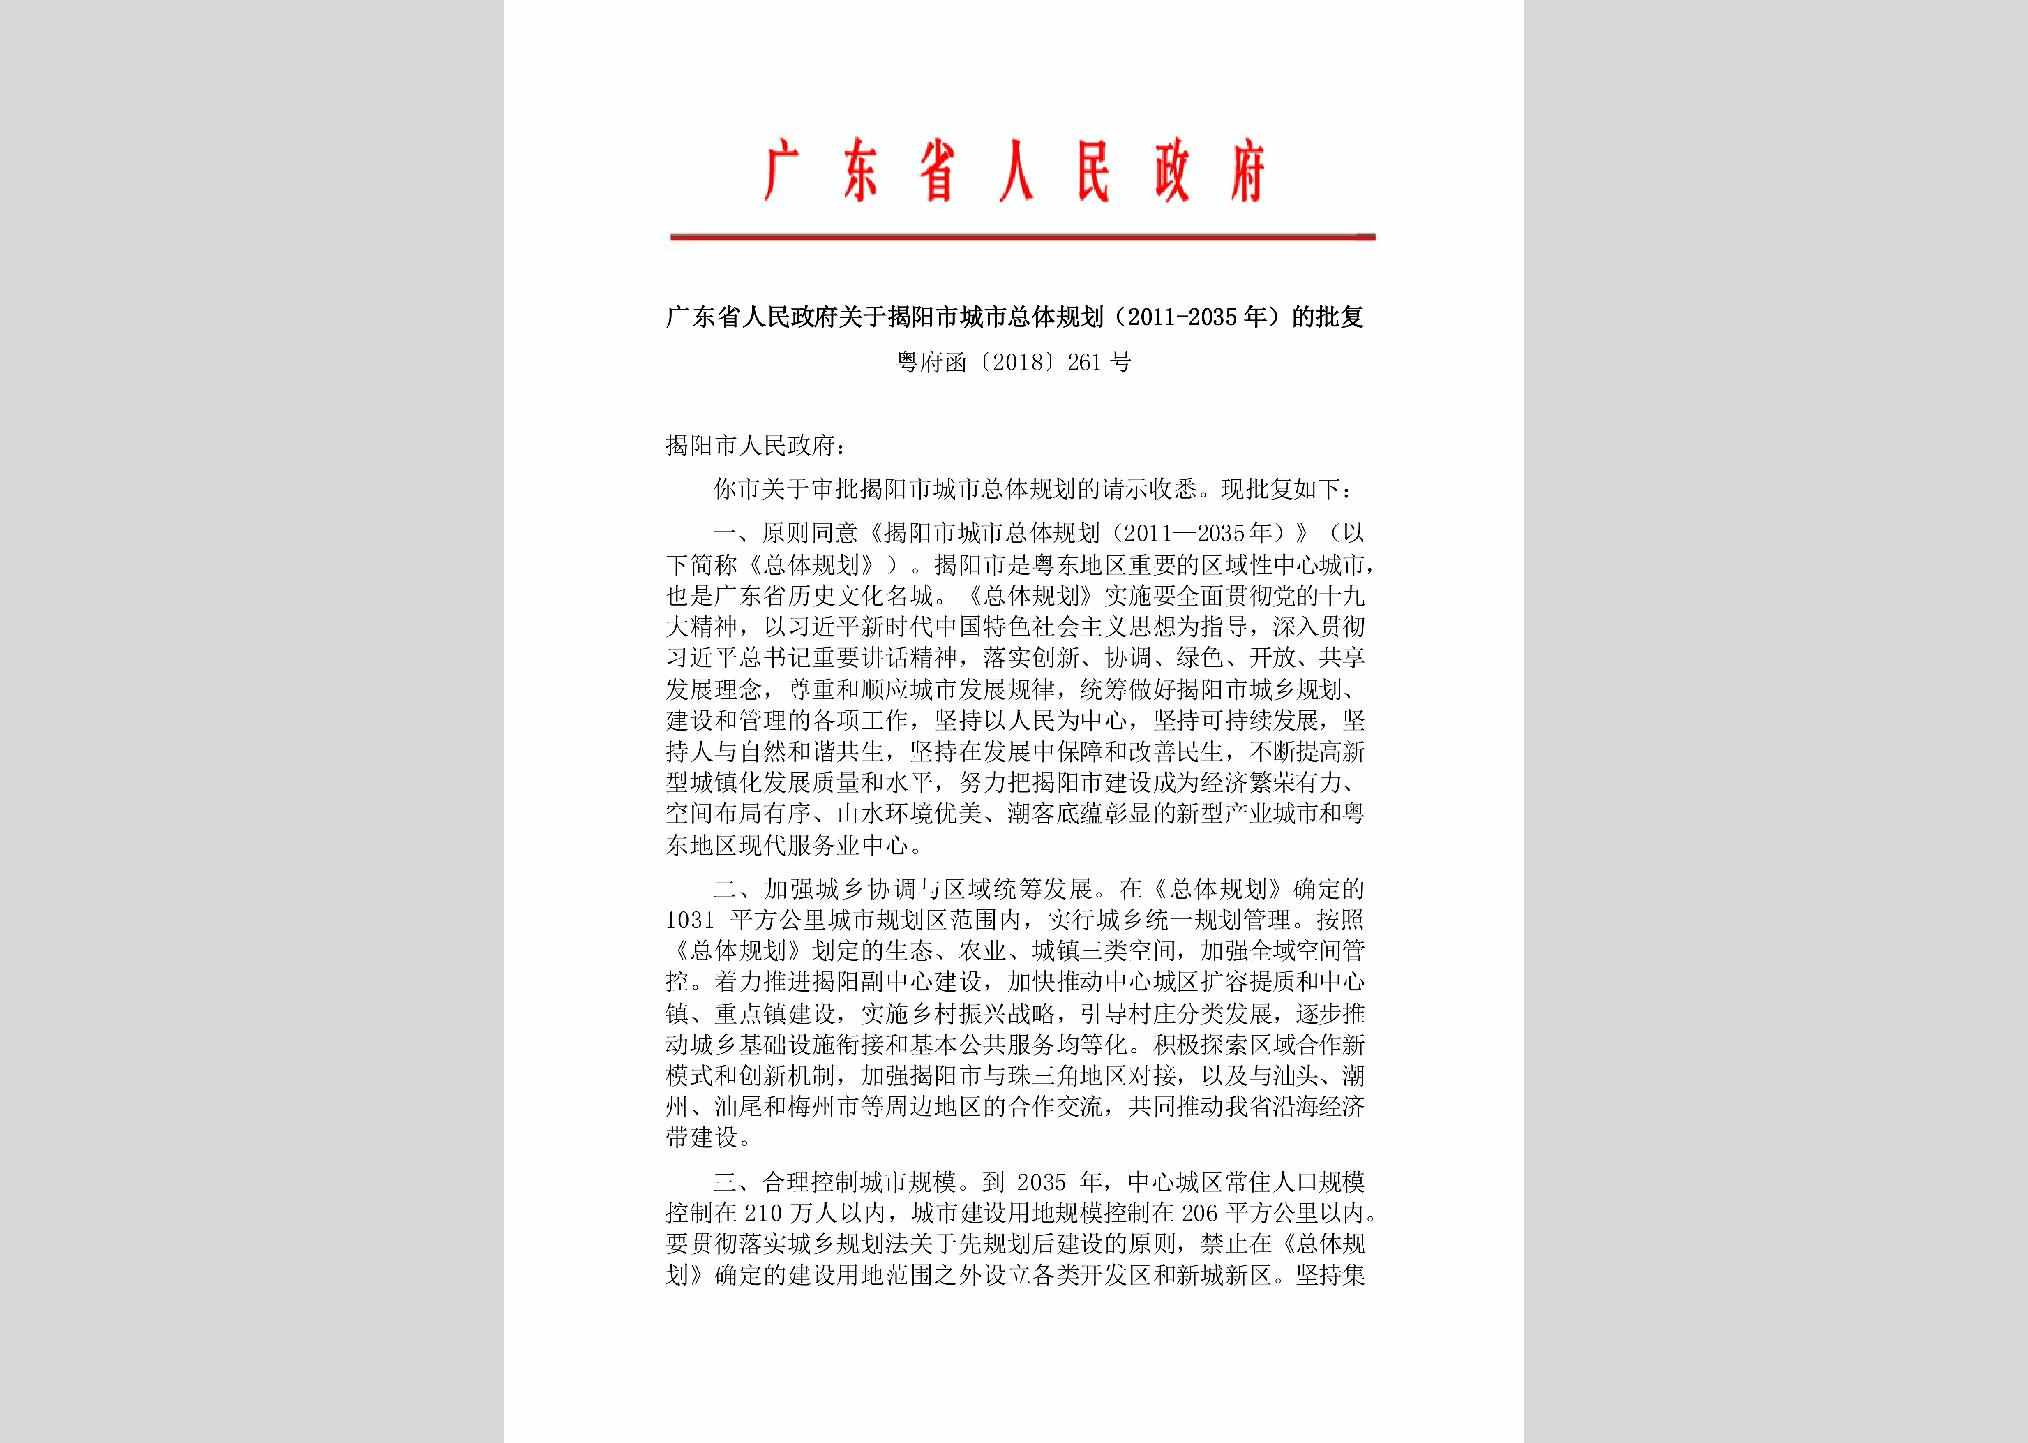 粤府函[2018]261号：广东省人民政府关于揭阳市城市总体规划(2011-2035年)的批复